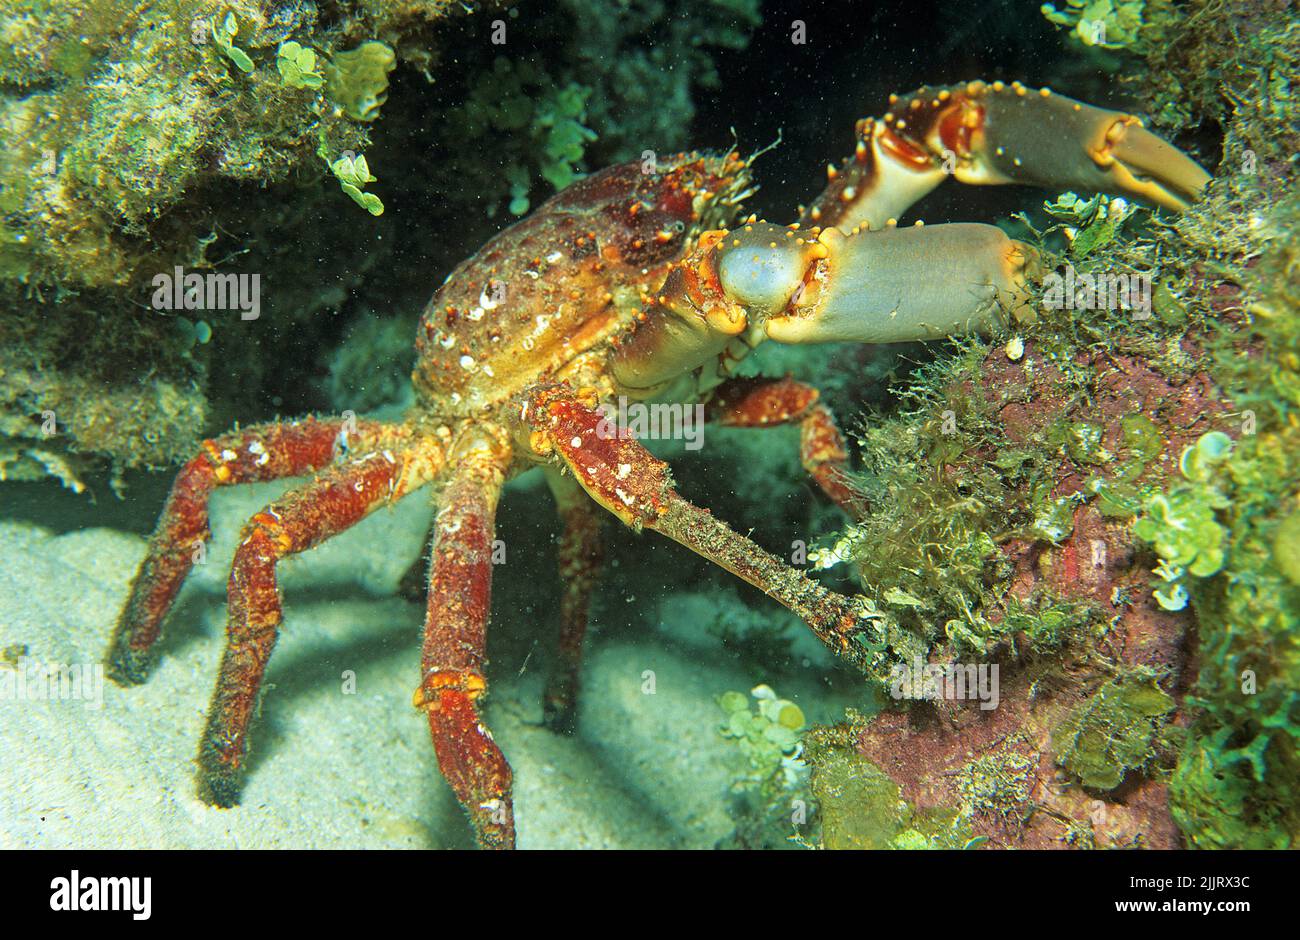 Channel-Anhaftende Krabbe (Mithrax spinosissimus), Roatan, Bay Islands, Honduras, Karibik, Karibisches Meer Stockfoto